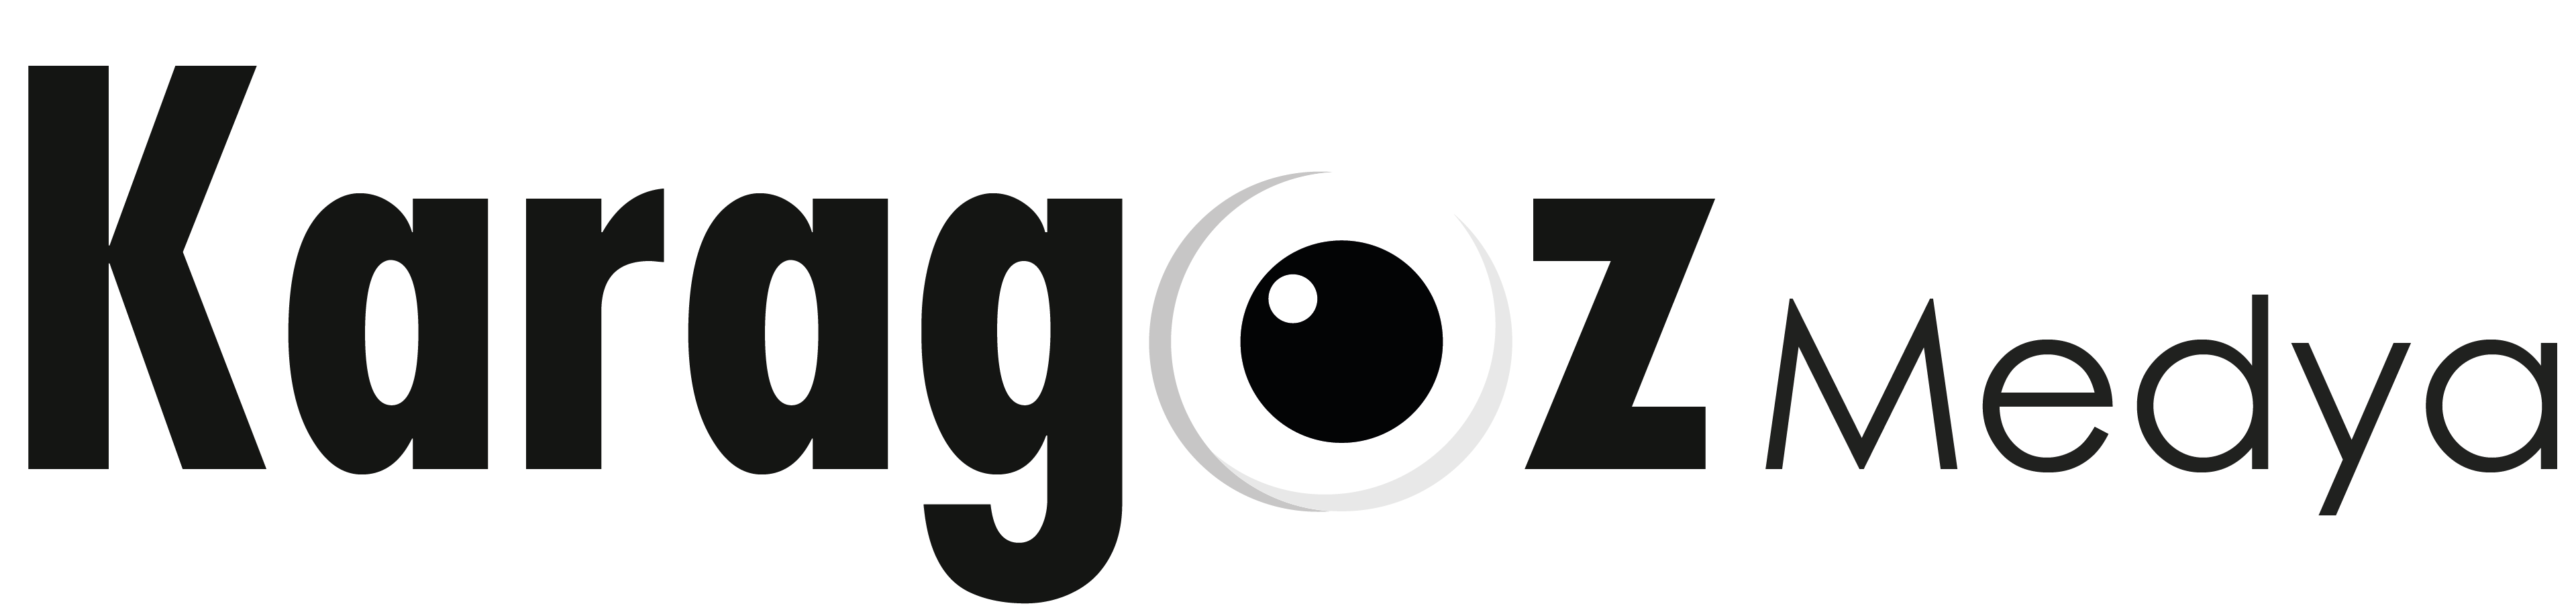 karagozmedya logo